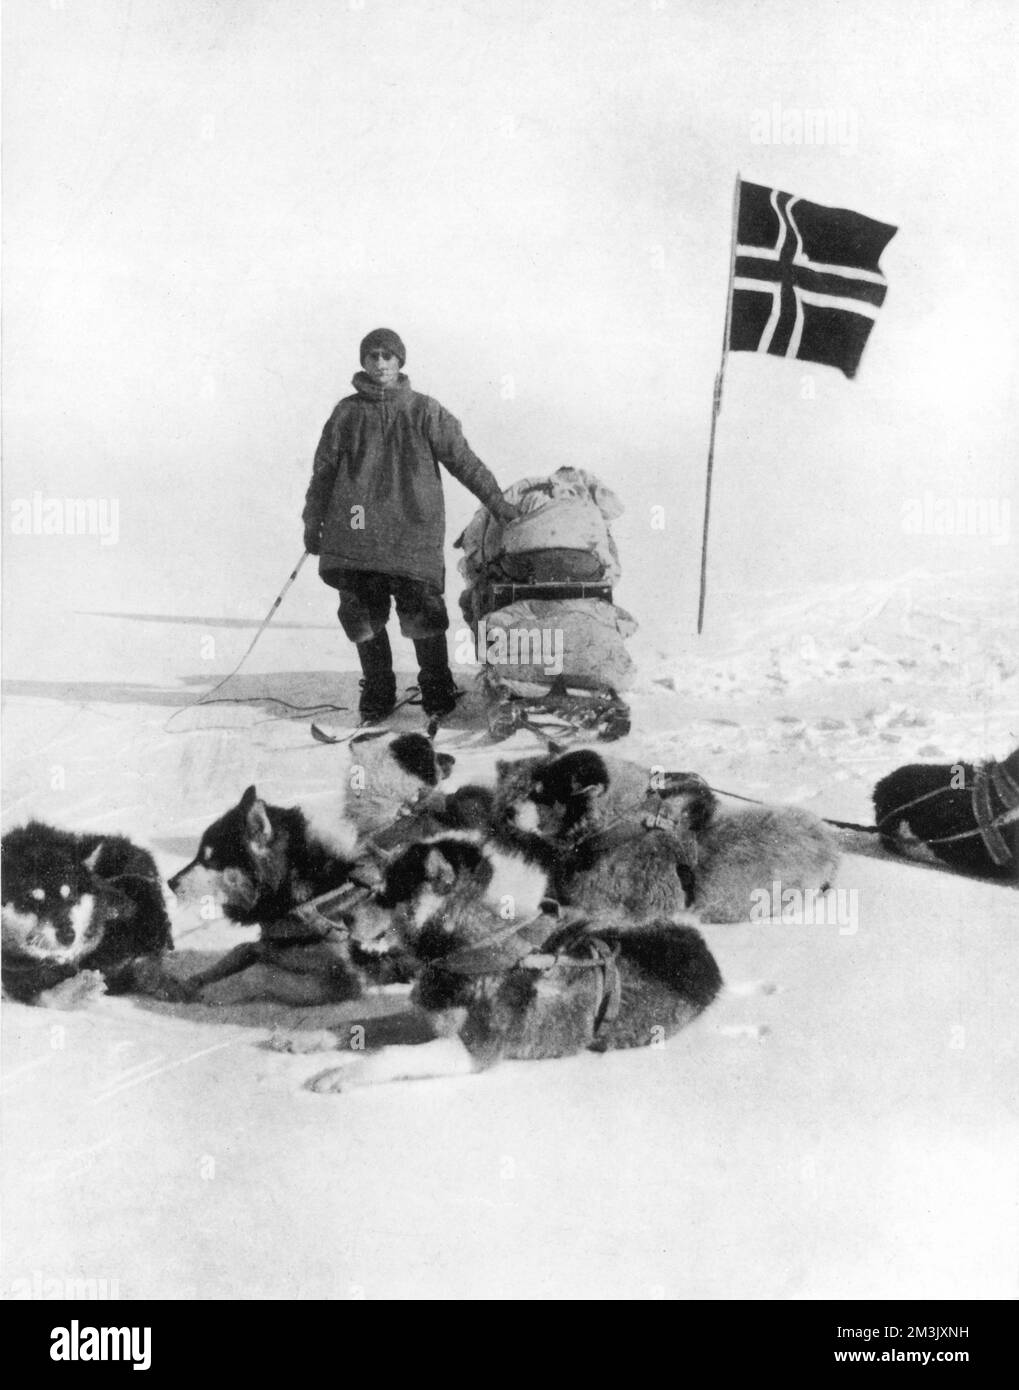 Le lieutenant Helmer Hansen, de l'expédition antarctique Amundsen de 1910-12, debout avec son traîneau, son équipe de chiens et son drapeau norvégien au Pôle Sud. Décembre 1911 Banque D'Images